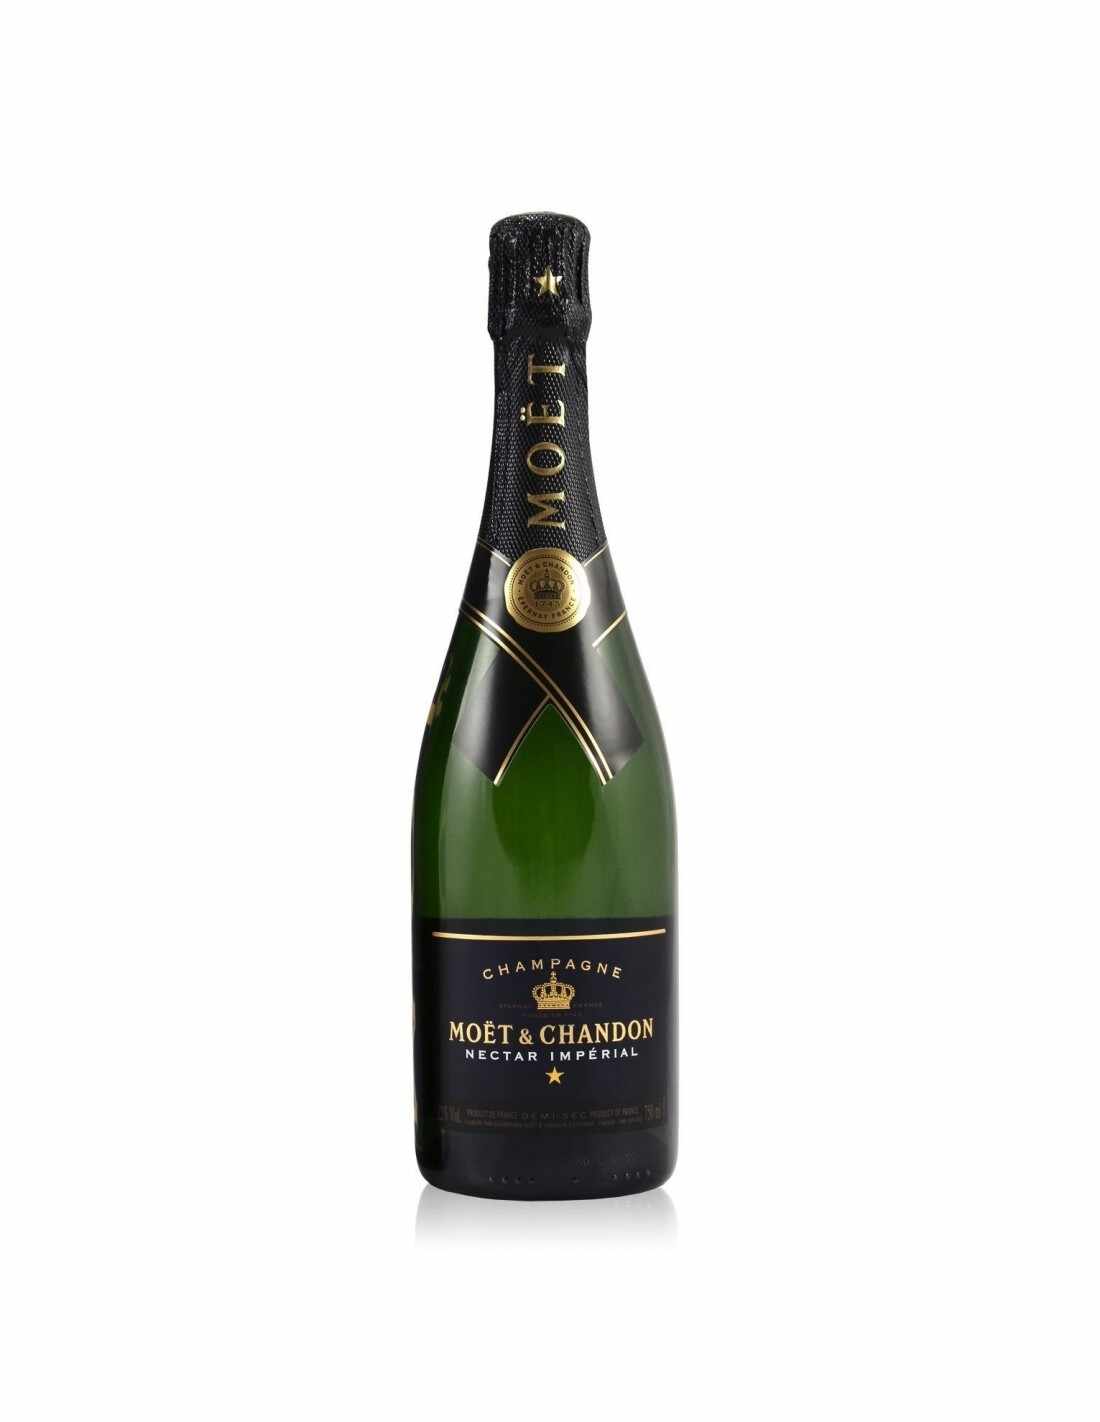 Sampanie MoÃ«t & Chandon Nectar Imperial Champagne, 0.75L, 12% alc., Franta